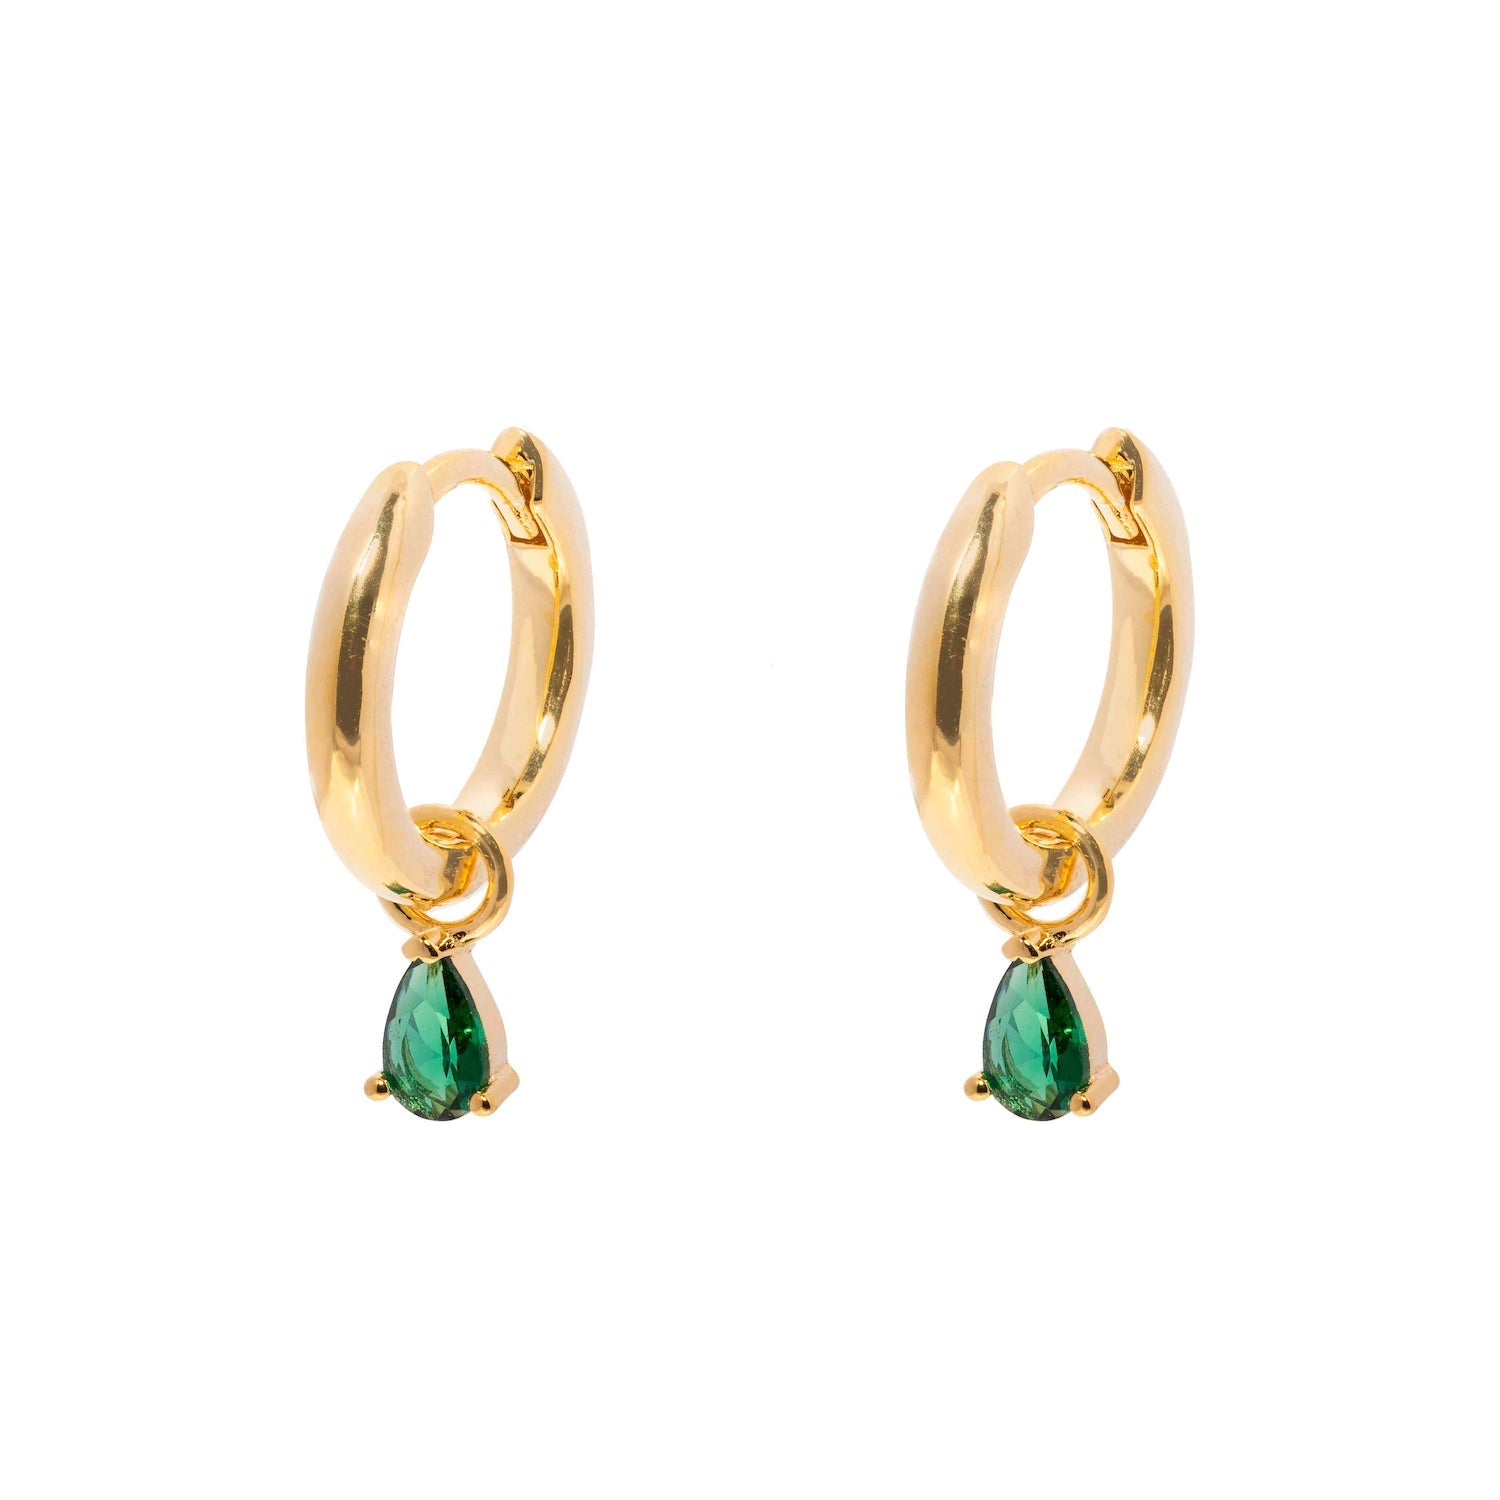 Duo Jewellery Earrings Hoop And Tear Drop Stone Earrings